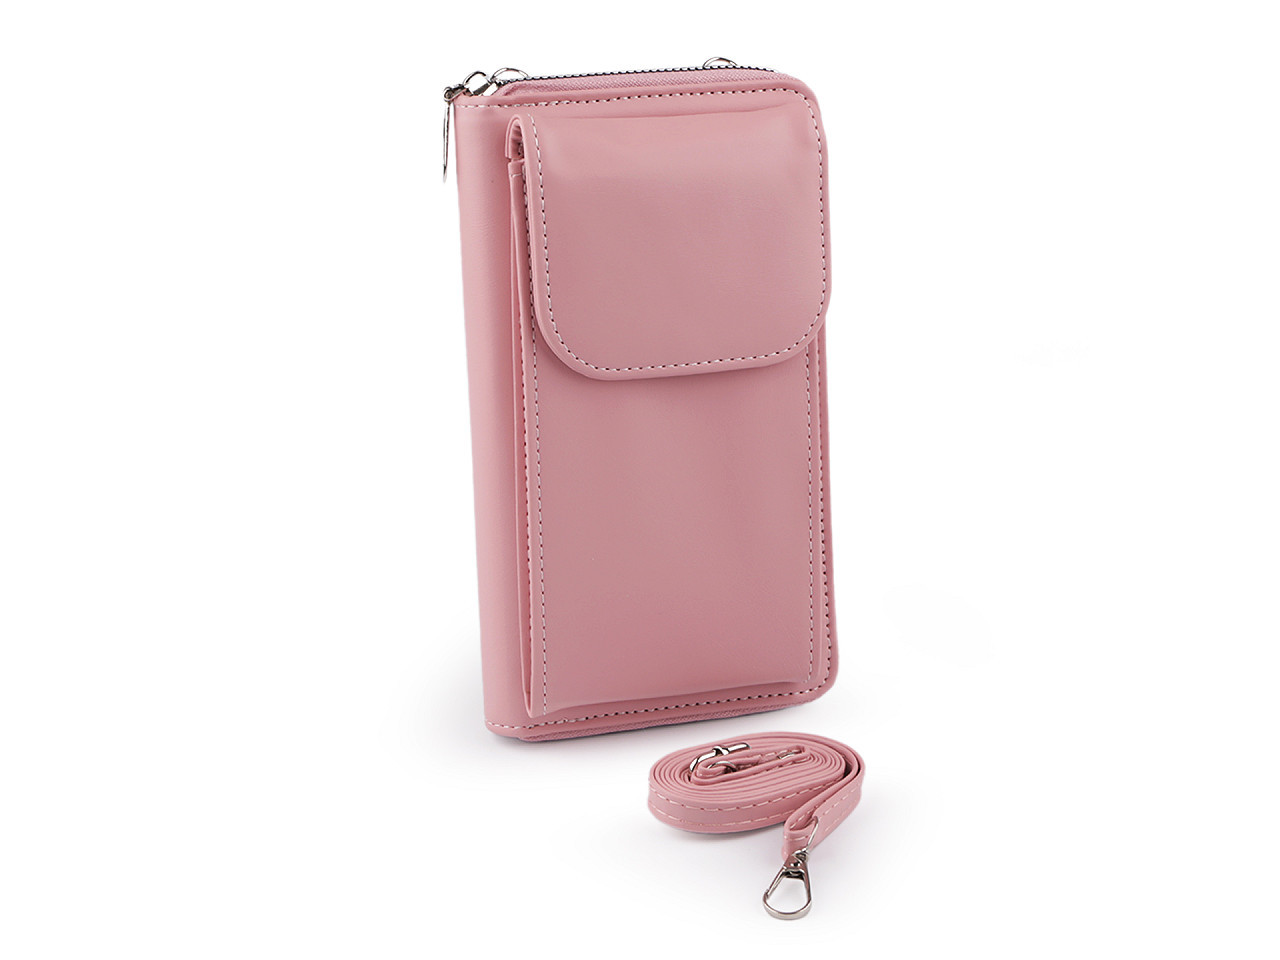 Peněženka s kapsou na mobil přes rameno crossbody 11x19 cm, barva 2 pudrová